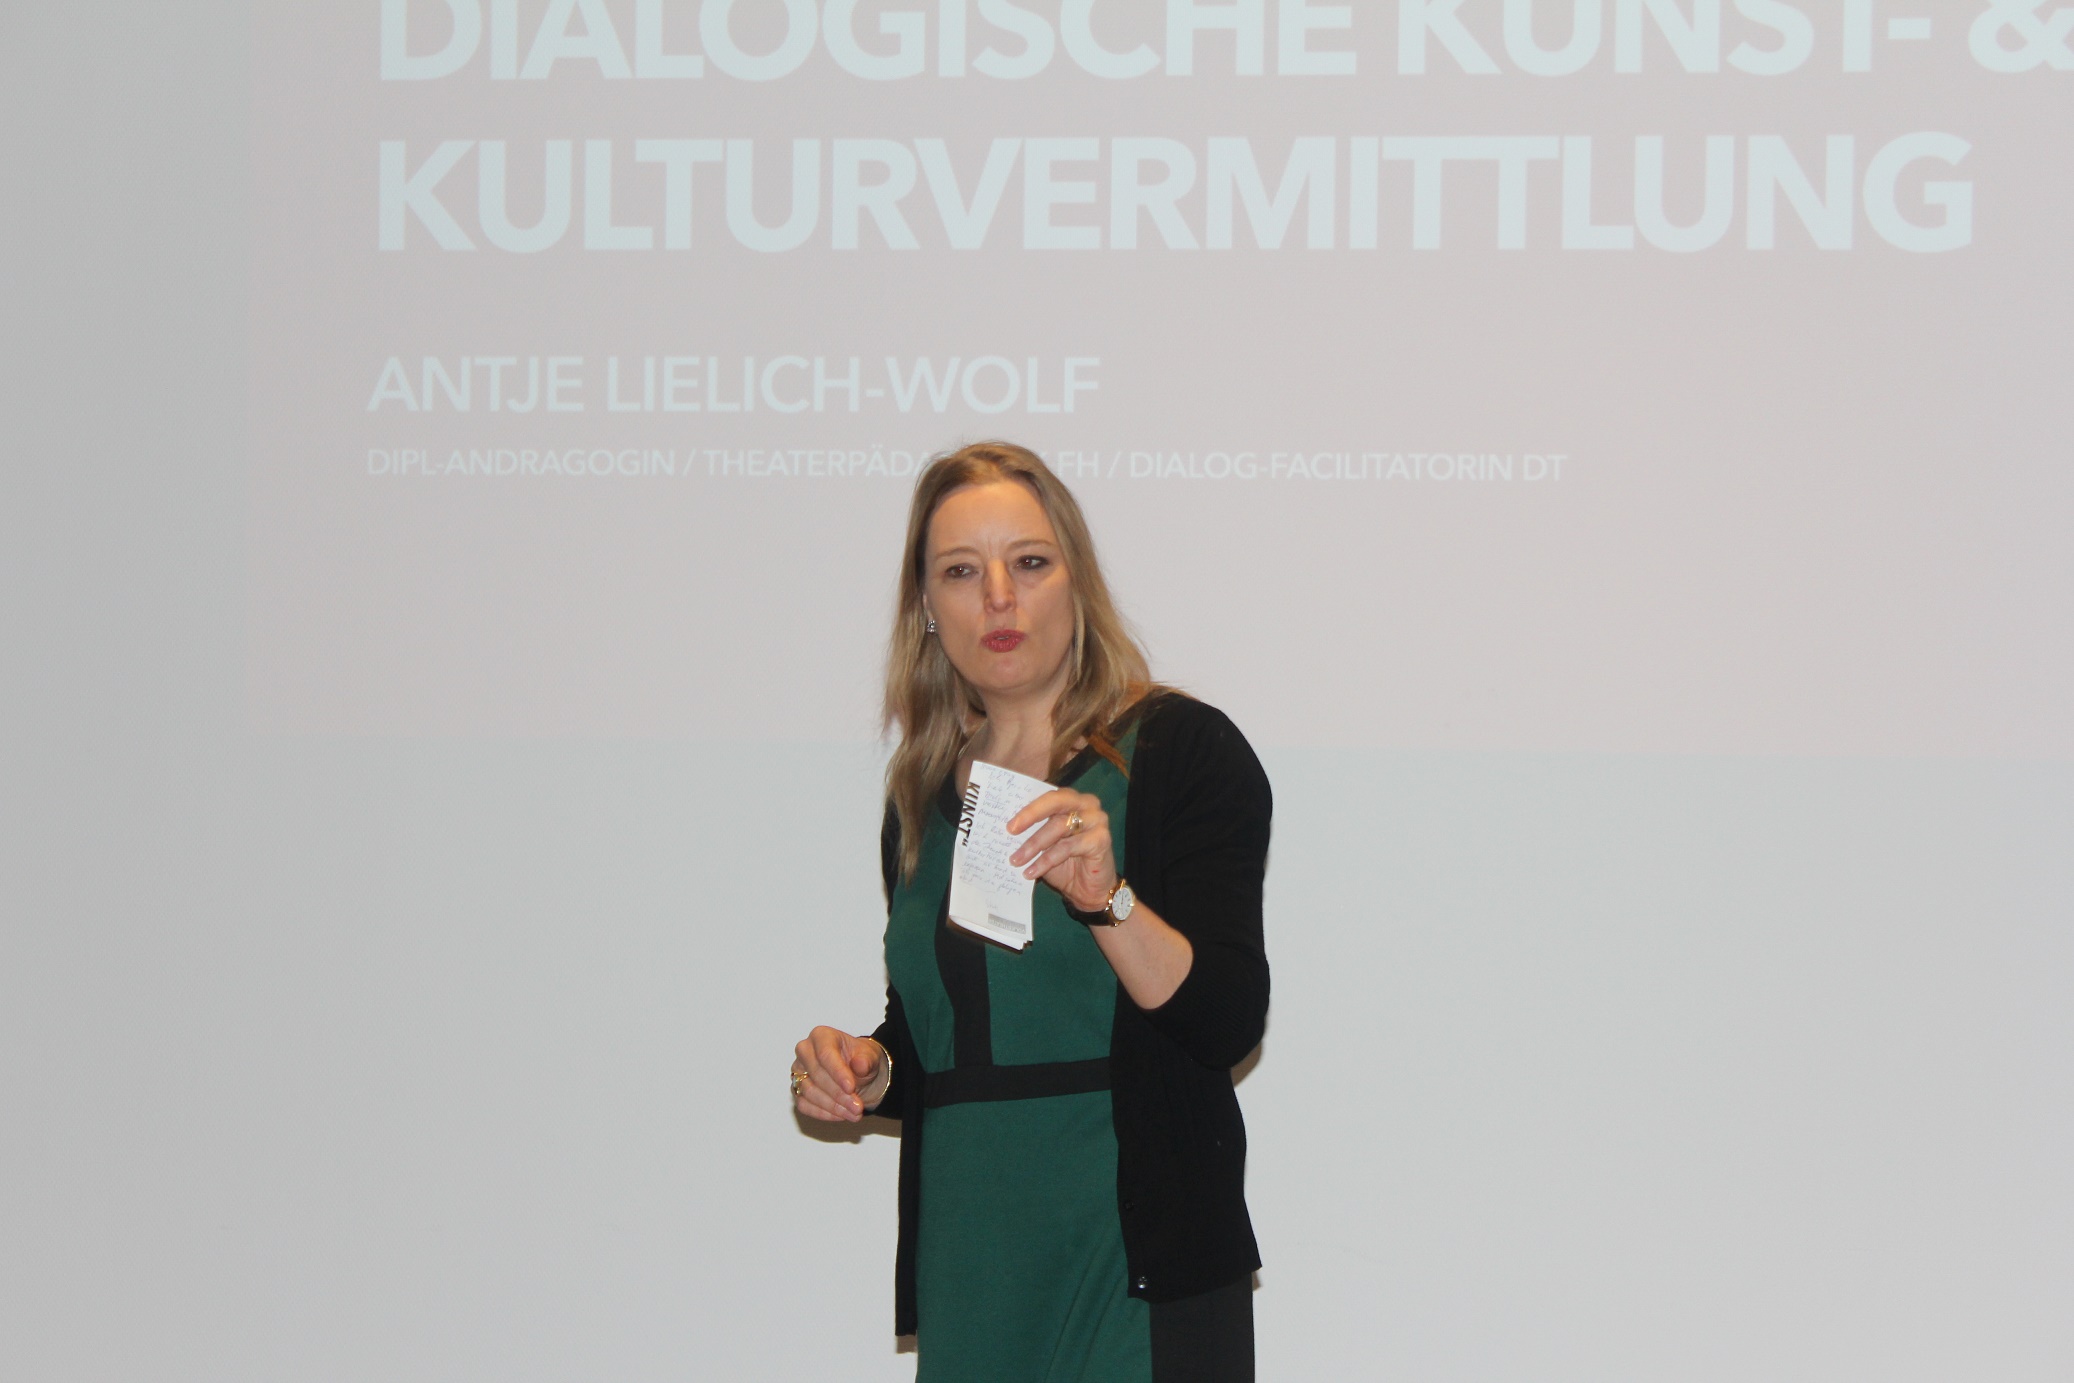 Antje Lielich-Wolf referierte zum Thema Dialogische Kulturvermittlung.